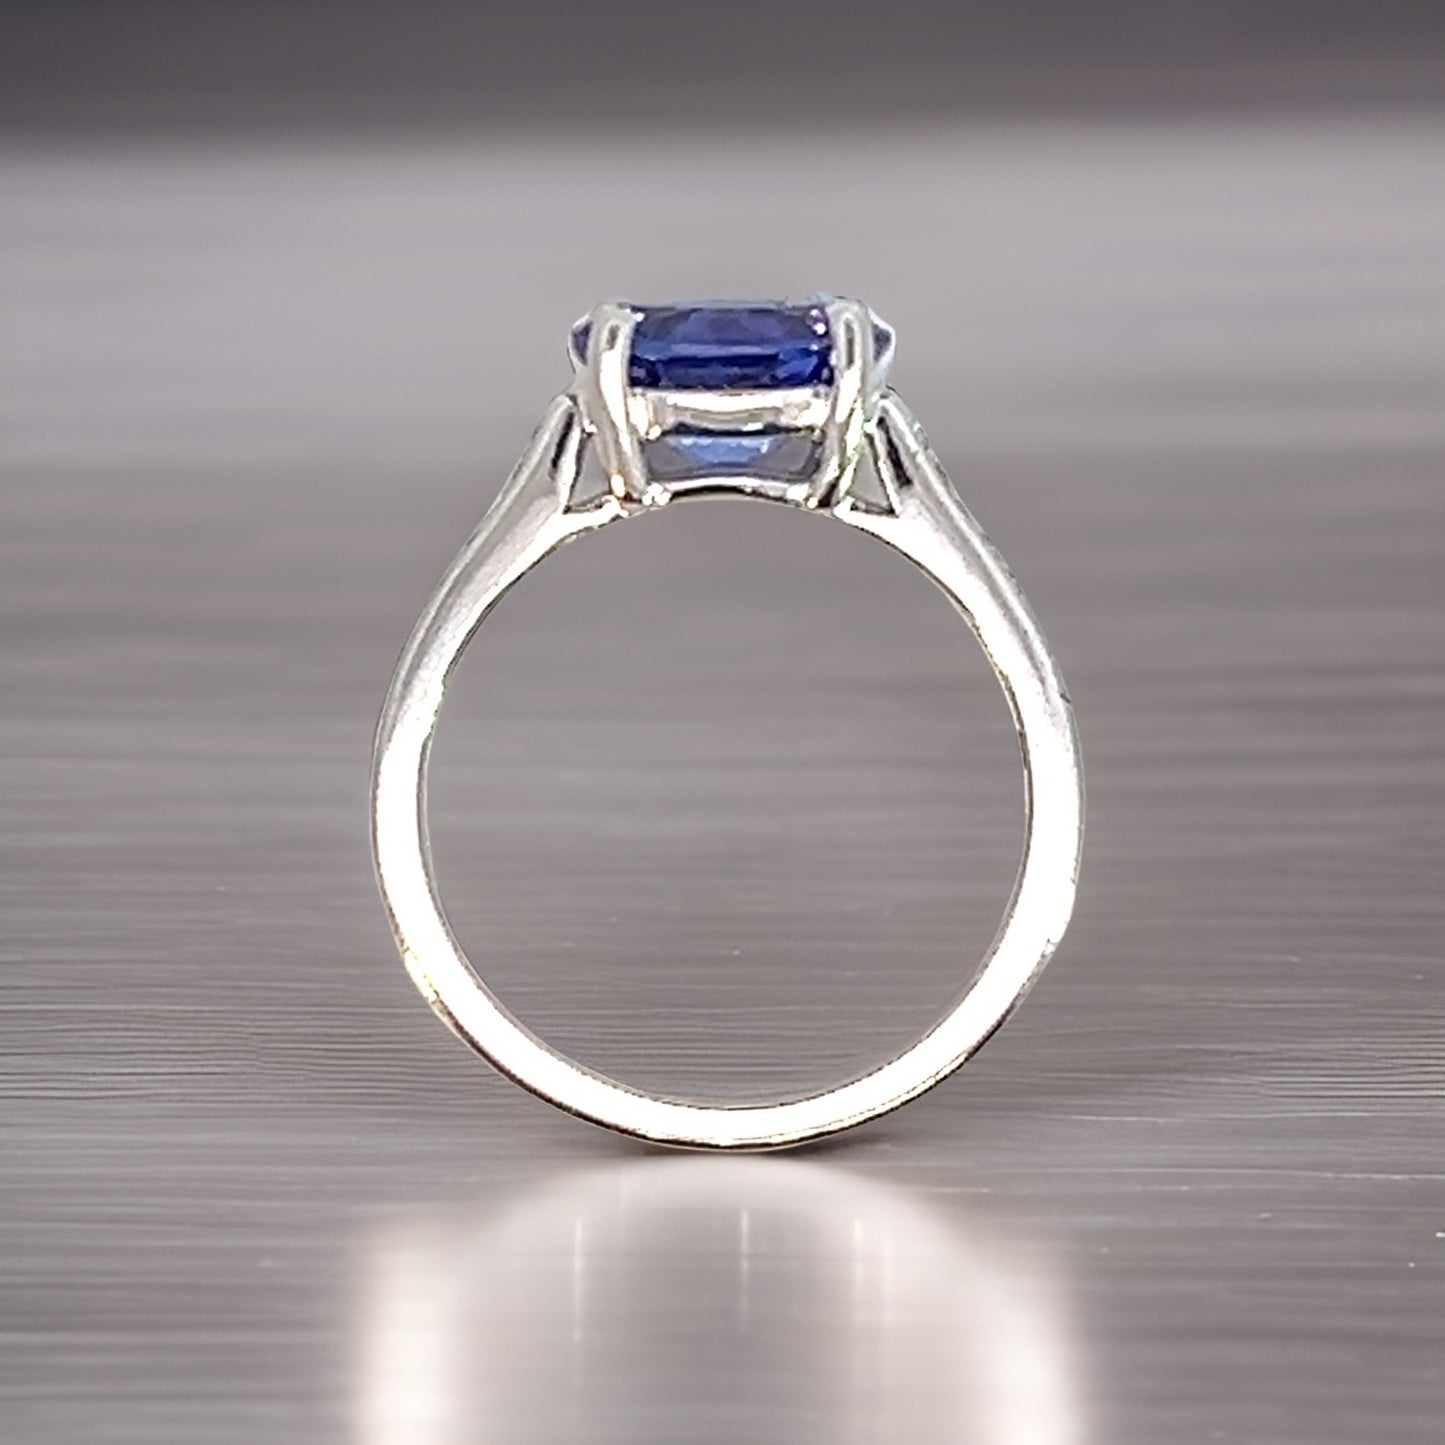 Natural Tanzanite Diamond Ring 6.5 14k WG 2.05 TCW Certified $3,950 310590